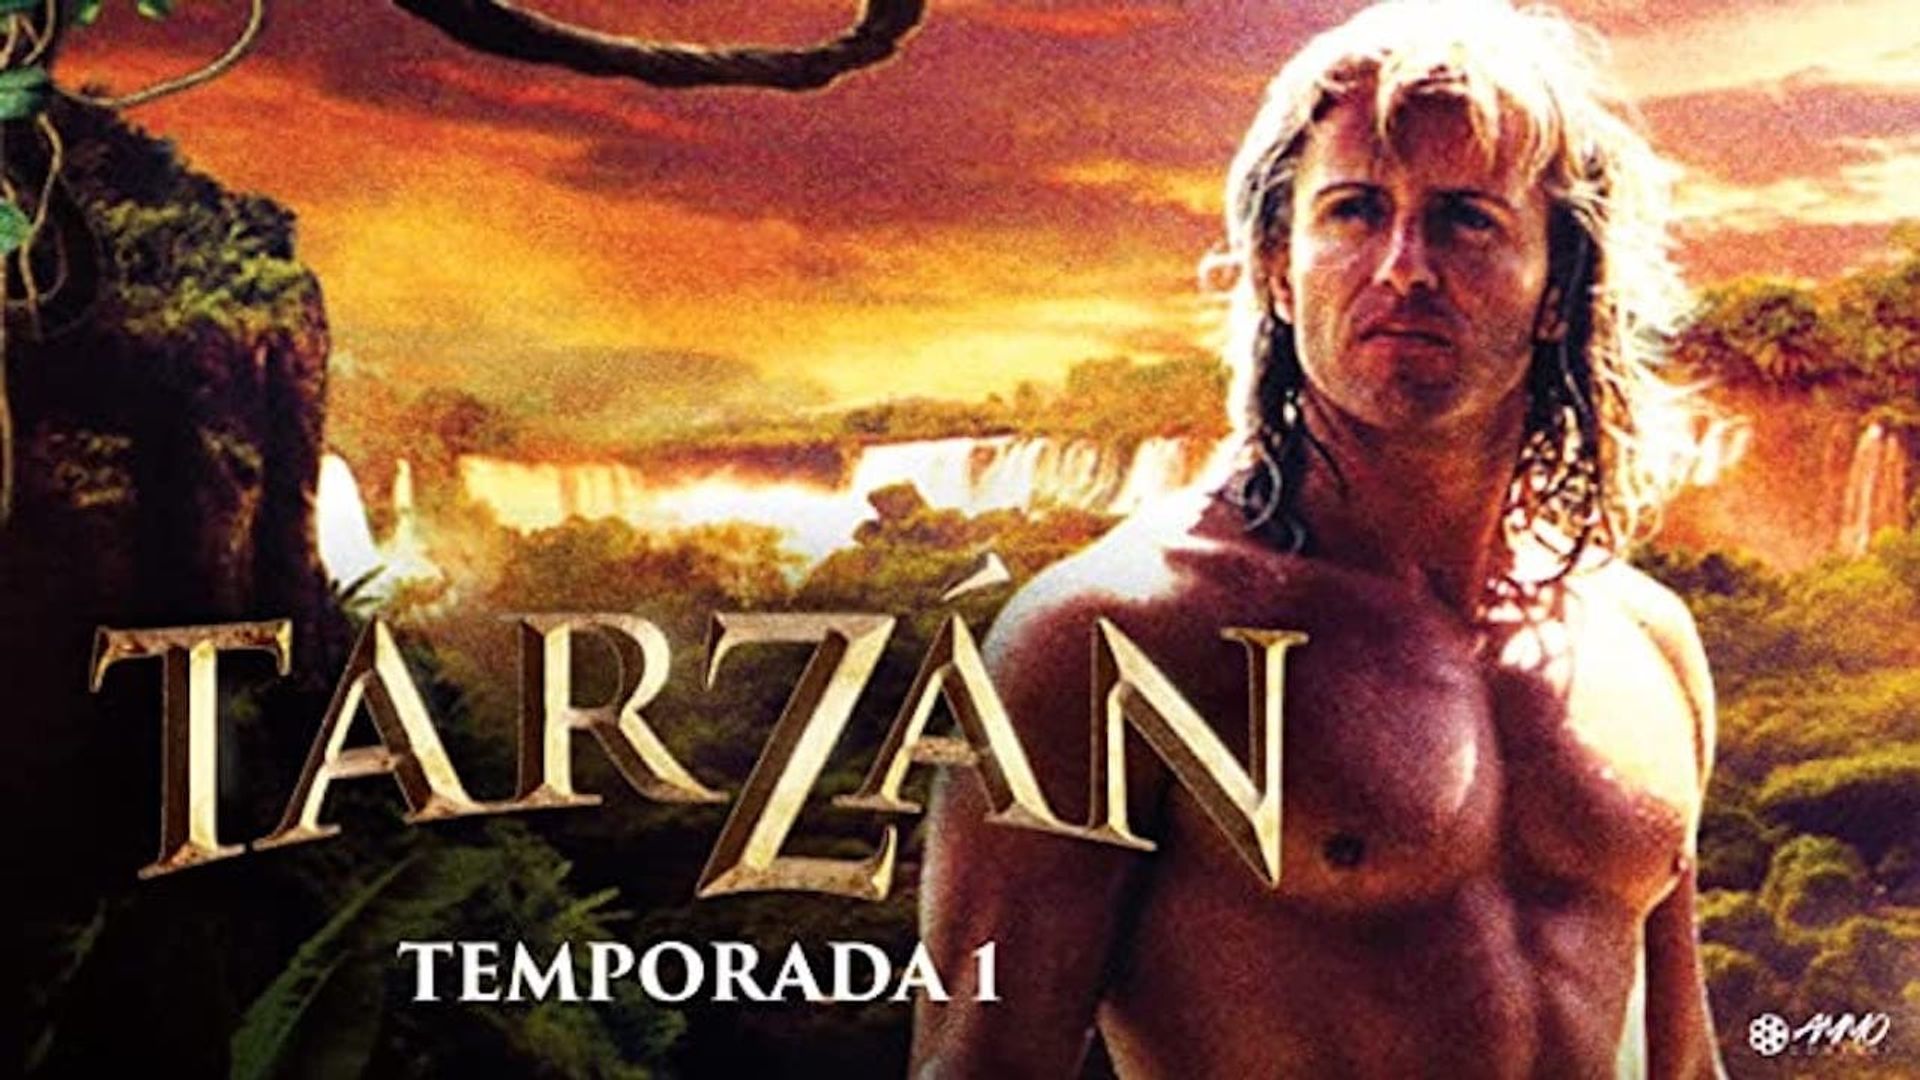 Tarzán background